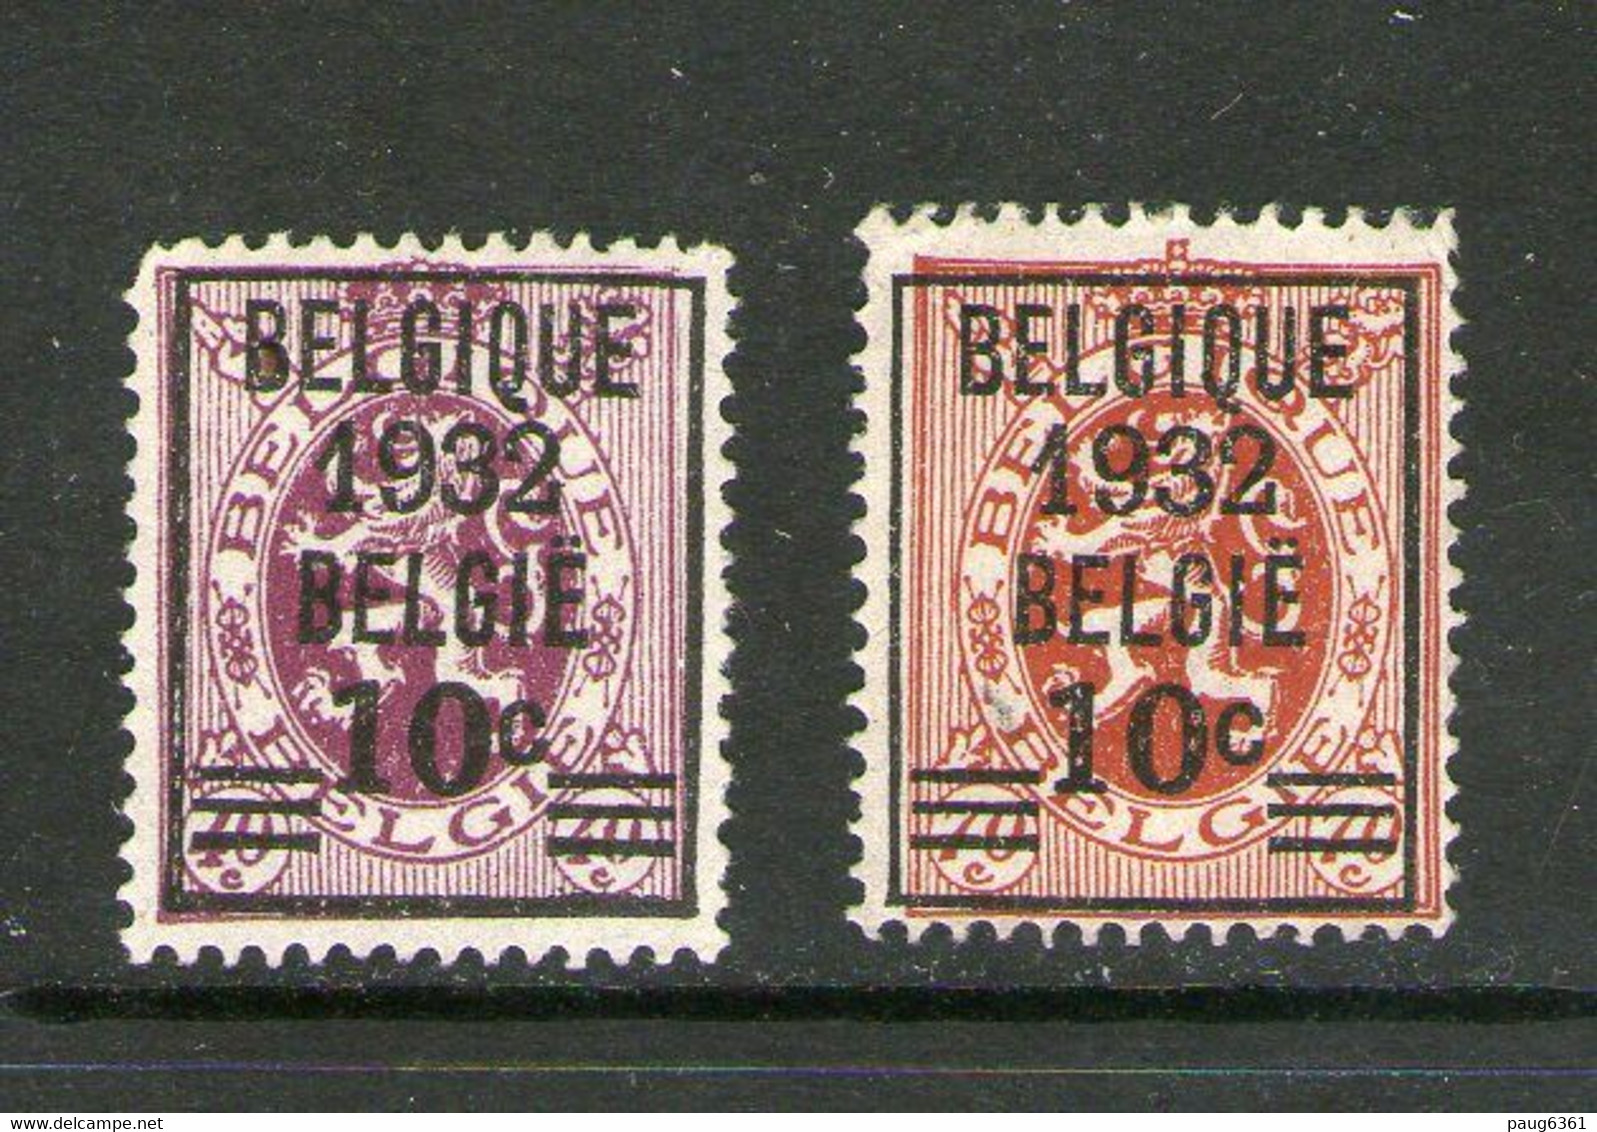 BELGIQUE 1932 YVERT N°333/34 NEUF MH* - Typografisch 1929-37 (Heraldieke Leeuw)